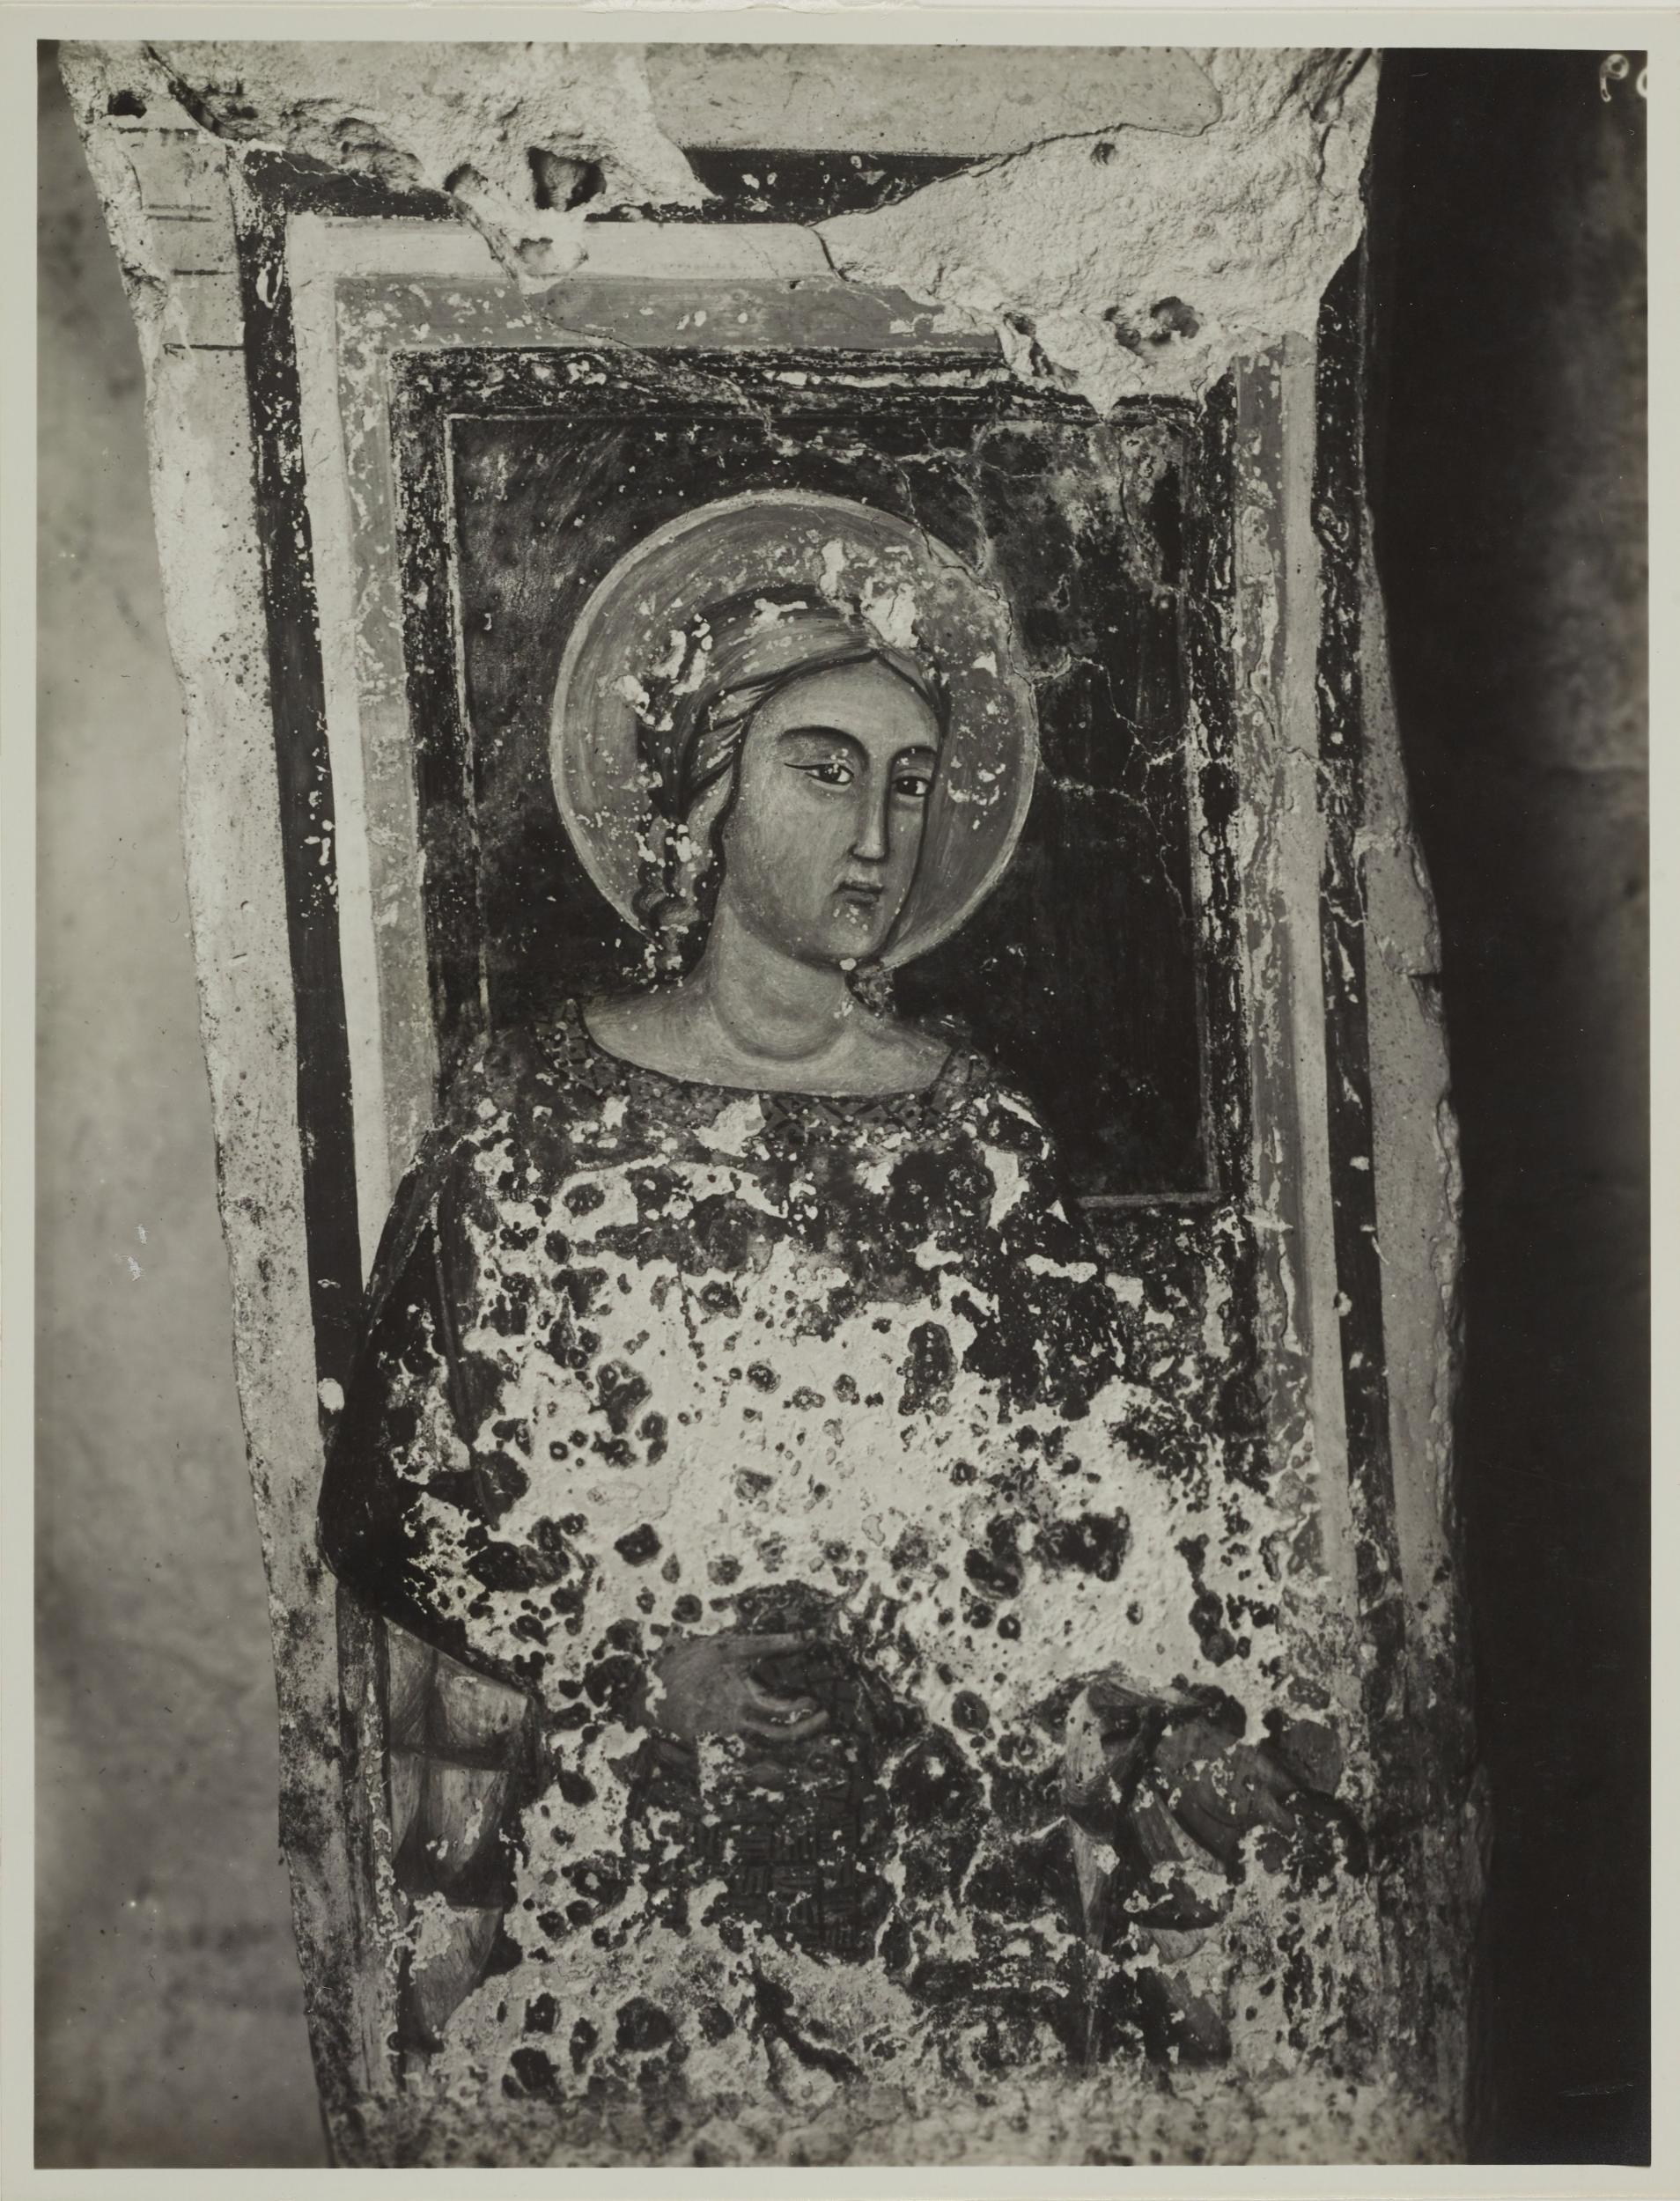 Fotografo non identificato, Andria - Chiesa di S. Croce, cripta, S. Dorotea, 1926-1950, gelatina ai sali d'argento/carta, MPI131866